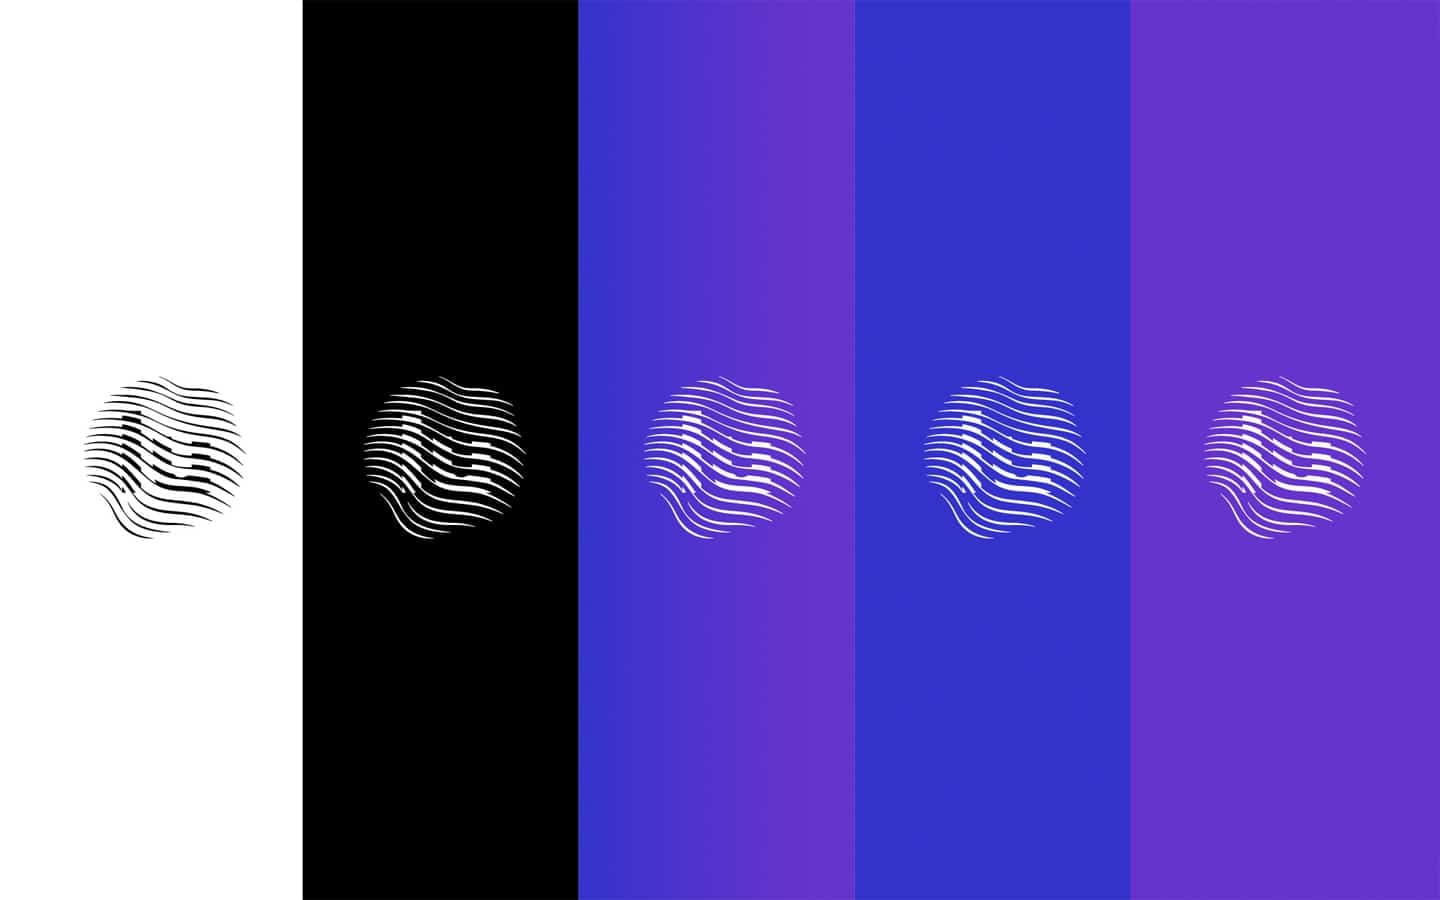 luminol-records-brand-identity-social-avatar